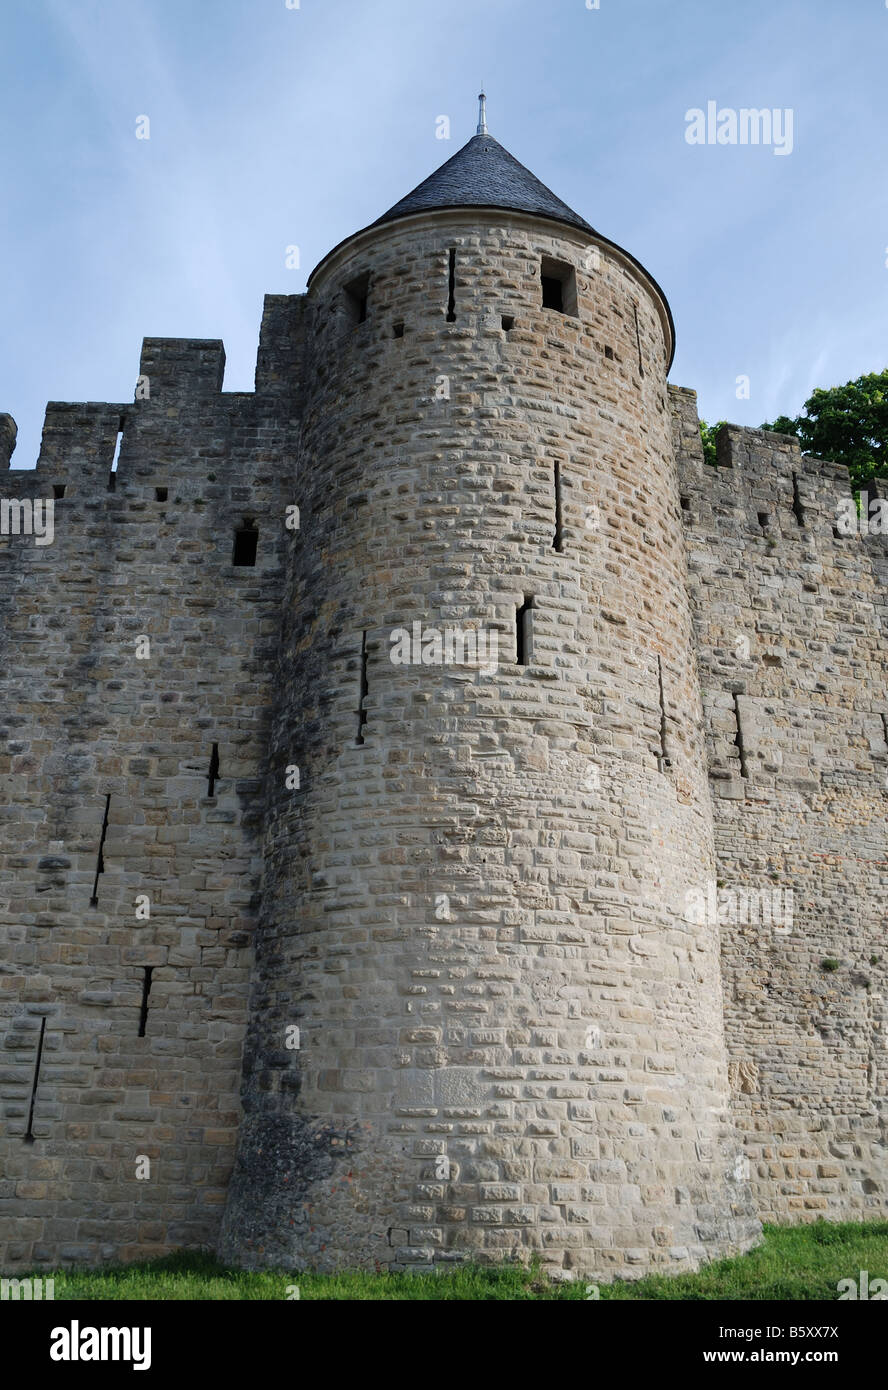 Noble torre cónica de la antigua muralla defensiva con lagunas y mampostería irregular contra el cielo azul Carcasson castillo Foto de stock